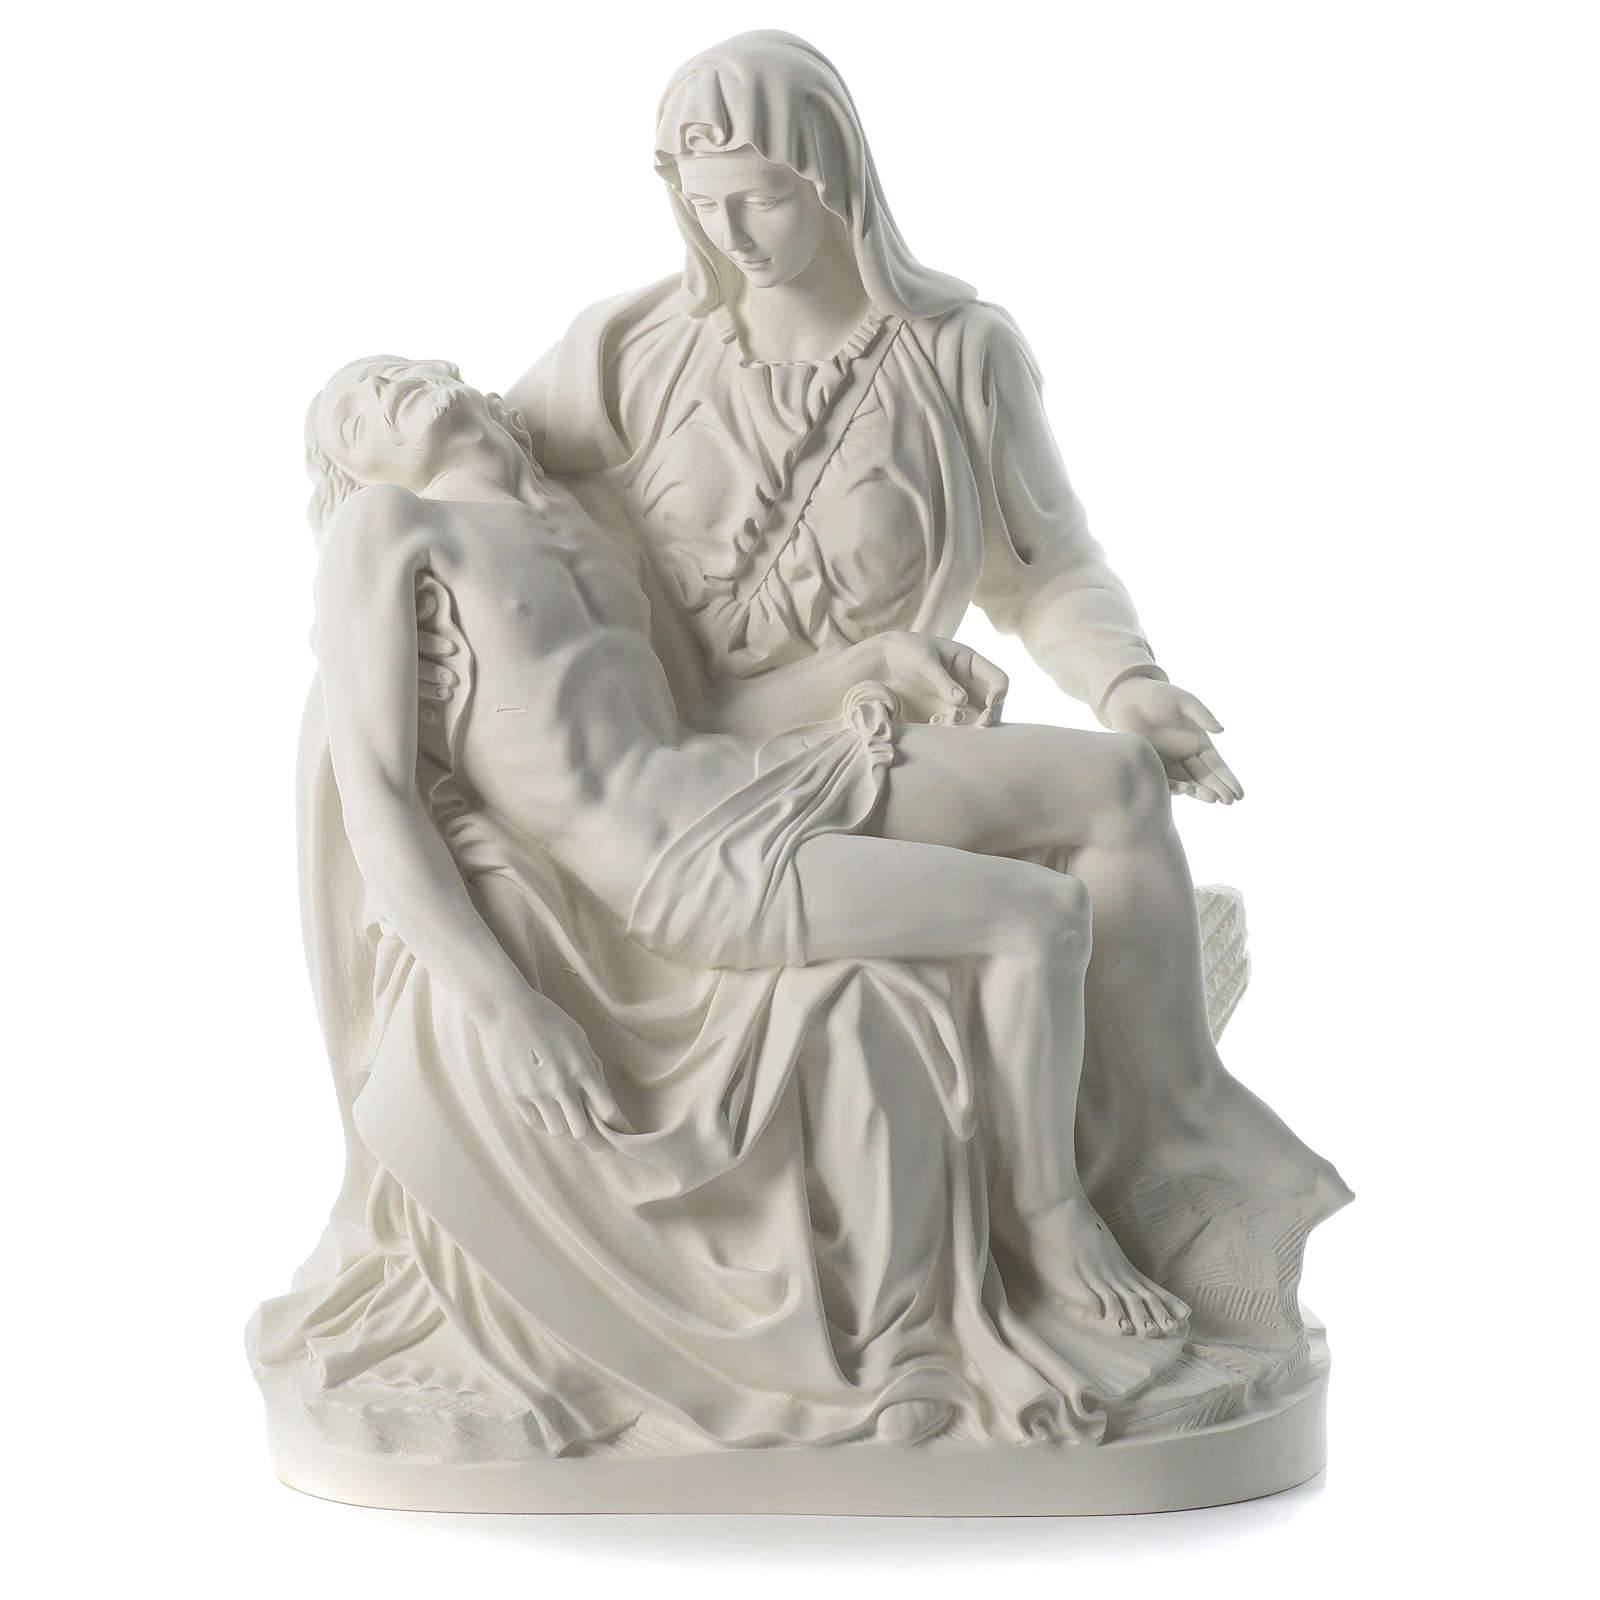 Marmer kualitas terbaik - Patung Pieta marmer putih religius keluarga suci ukiran tangan gaya Barat untuk dijual – Atisan Works